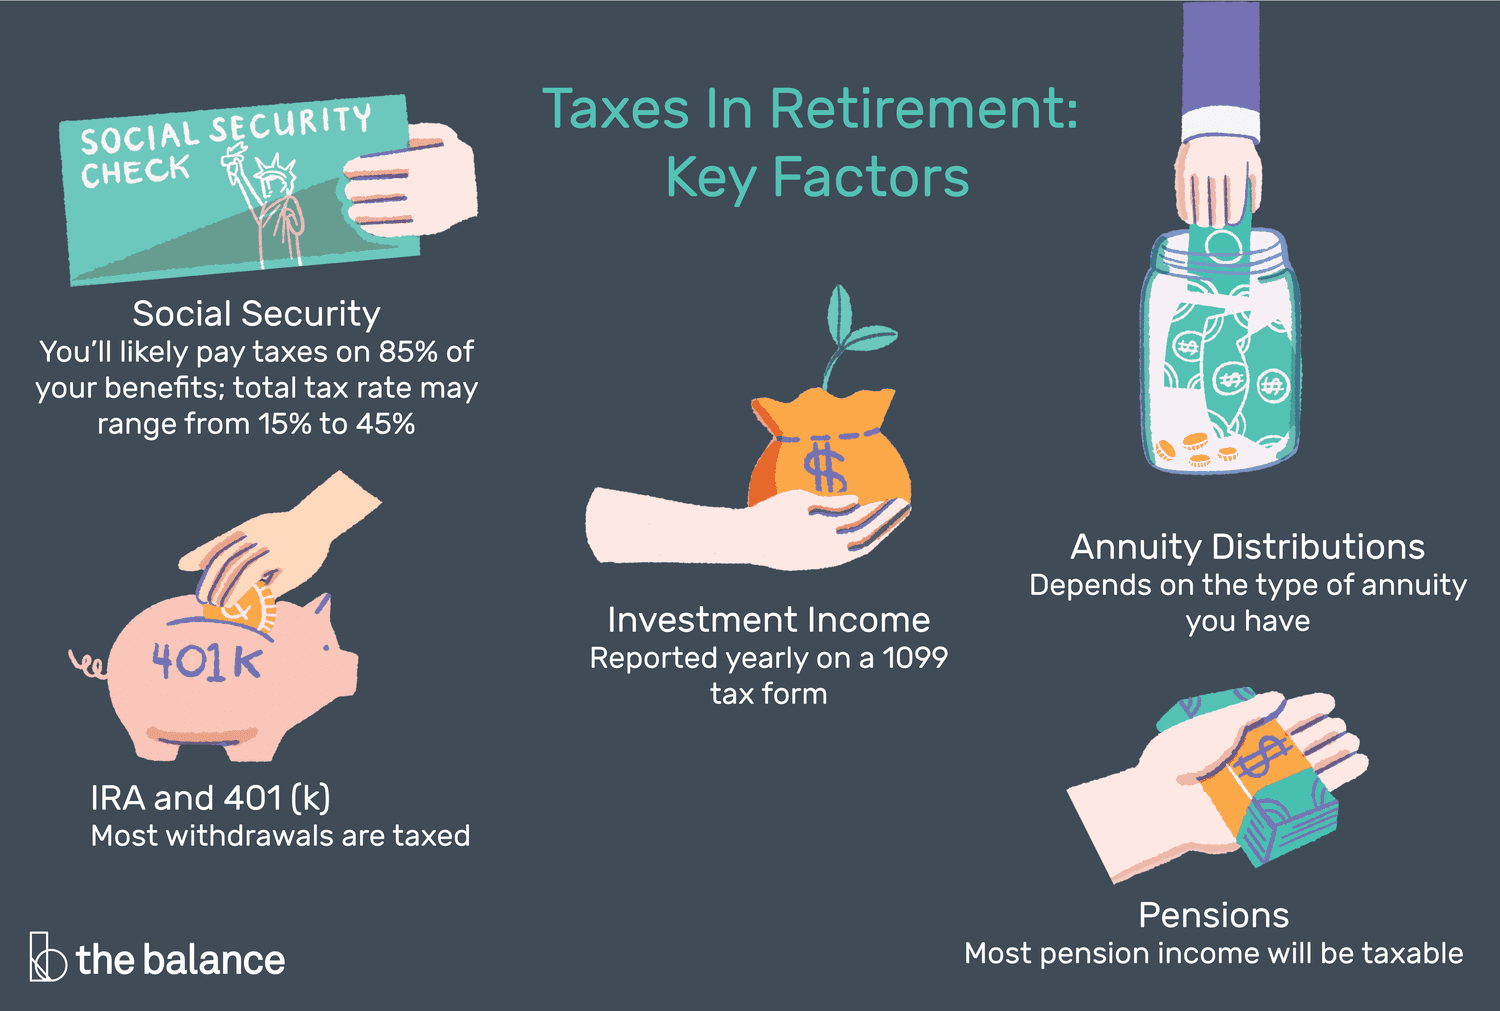 退休税收的关键因素是社会保障、IRA和401(k)、投资收入、年金分配和养老金